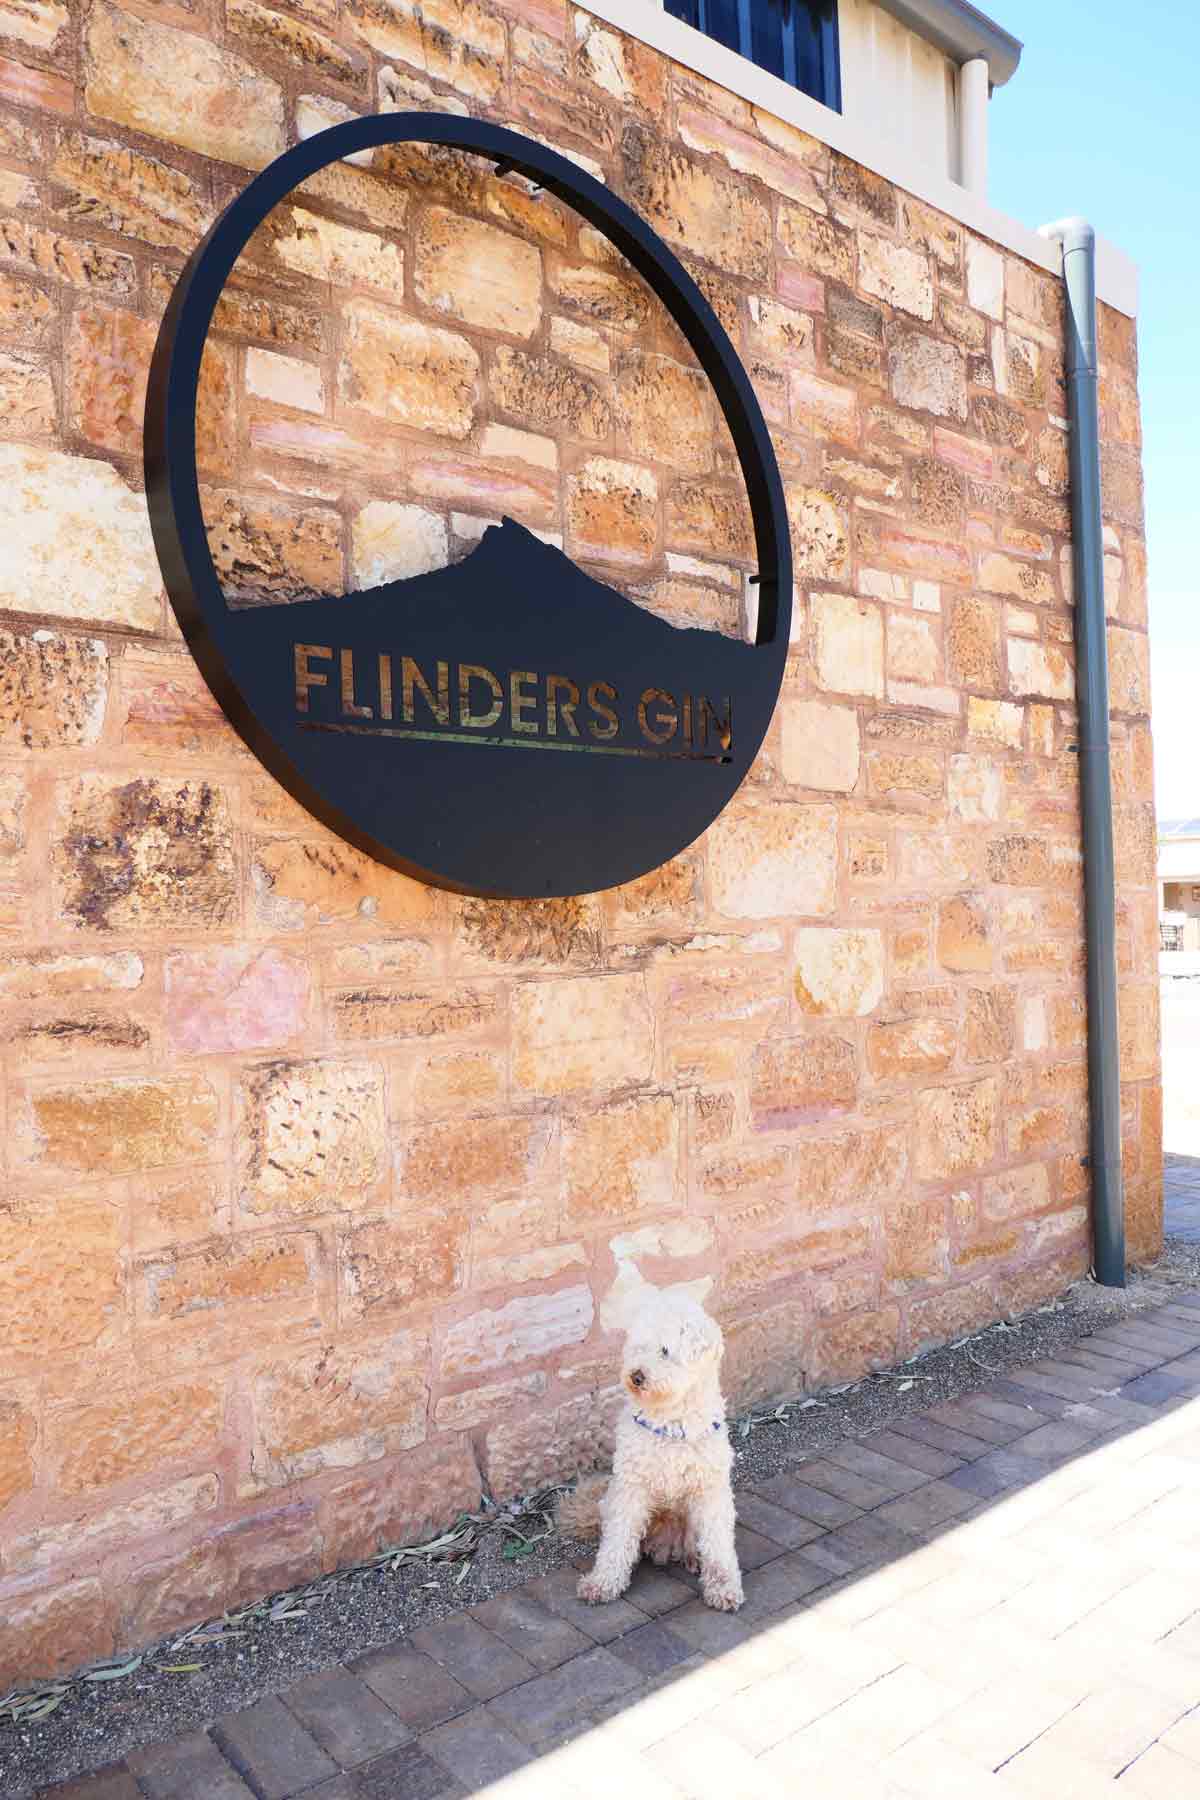 Flinders Gin in Quorn